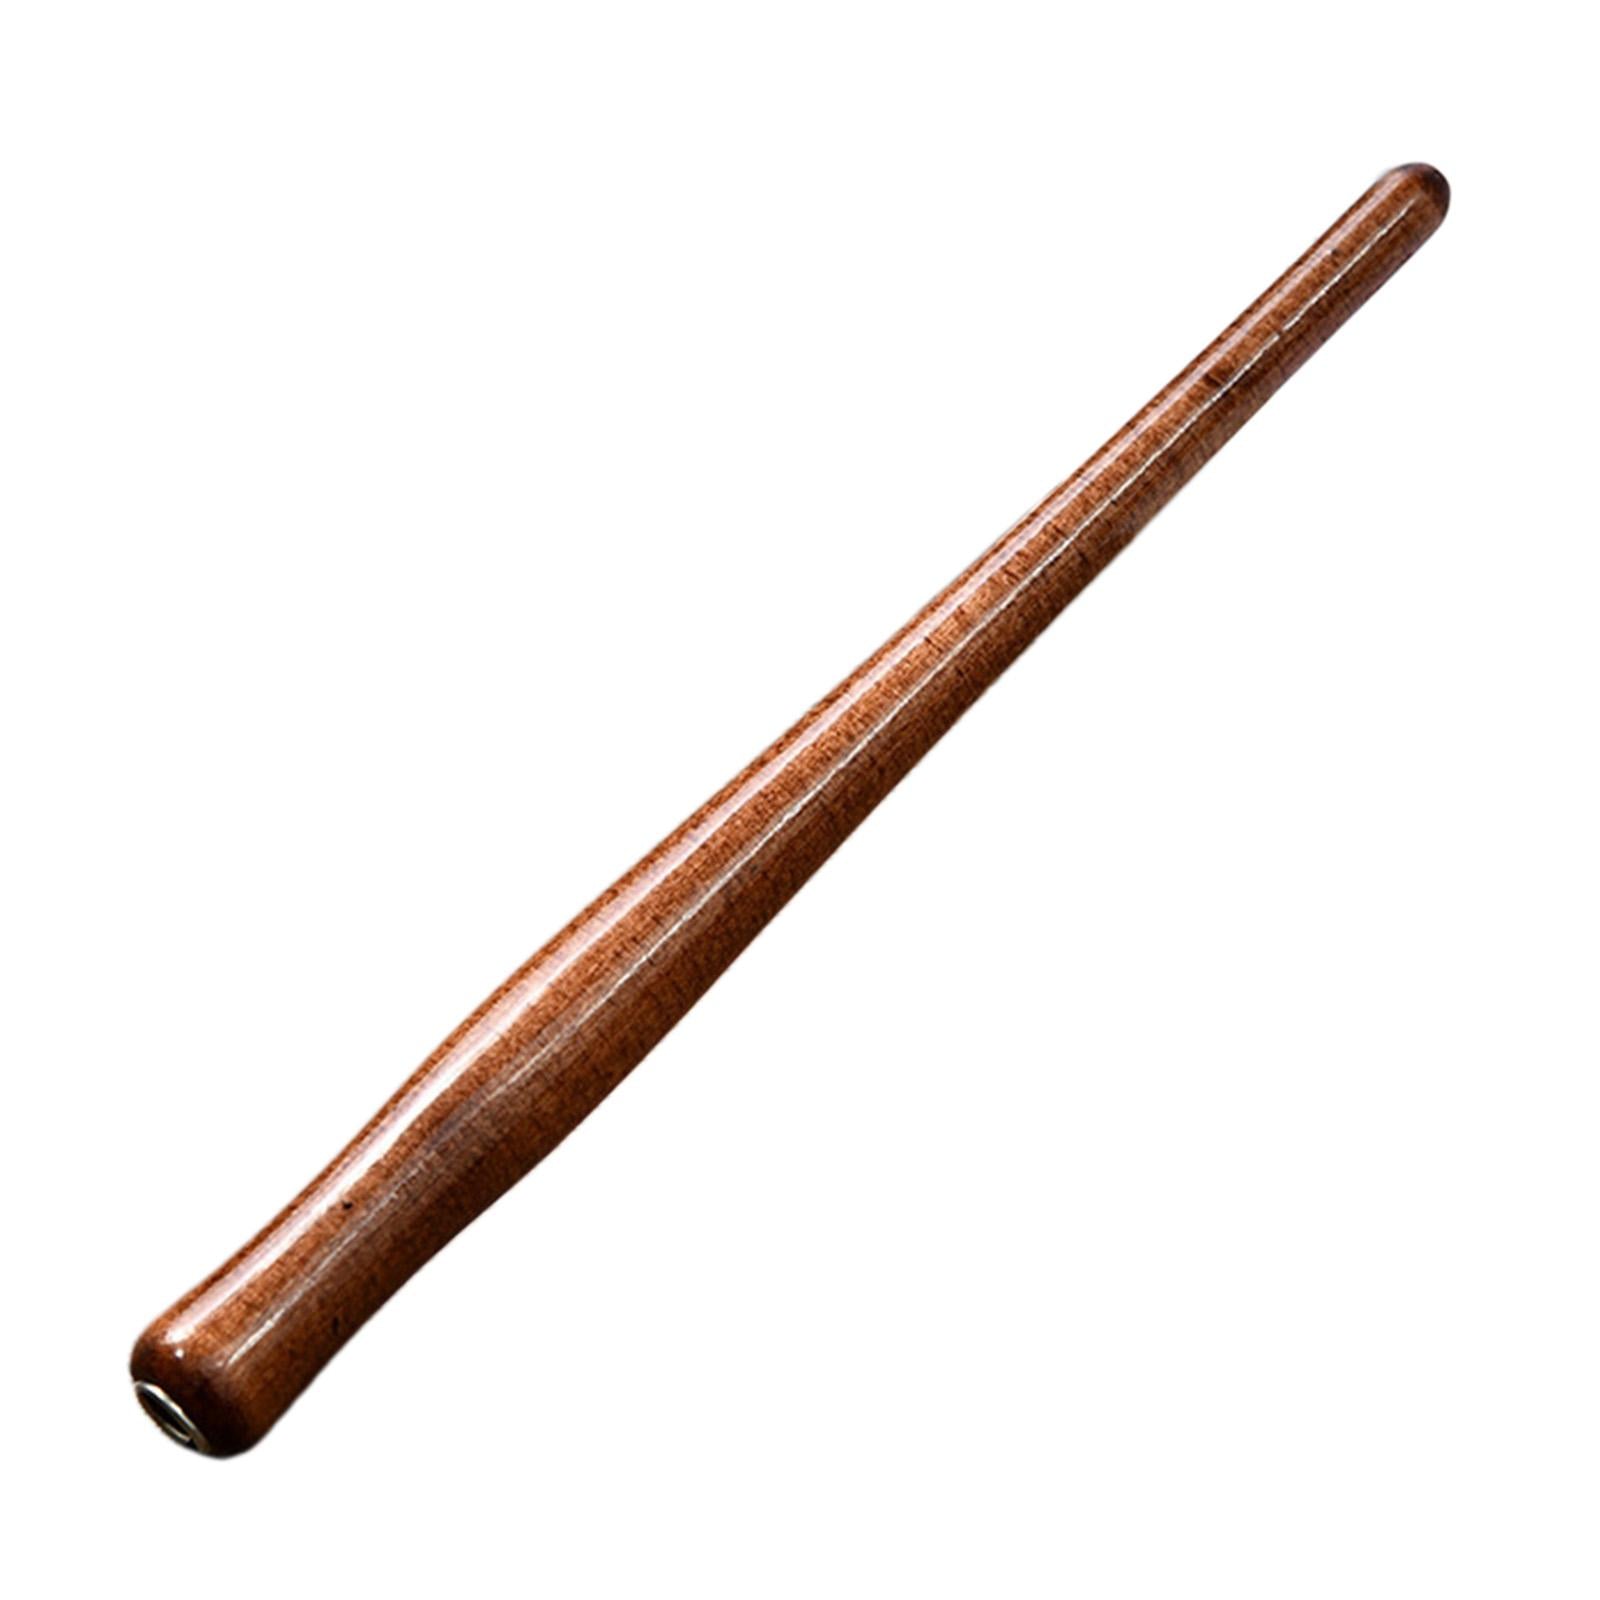 Wooden Calligraphy Dip Pen Holder for Various Pen Nib Portable Compact Retro Brown